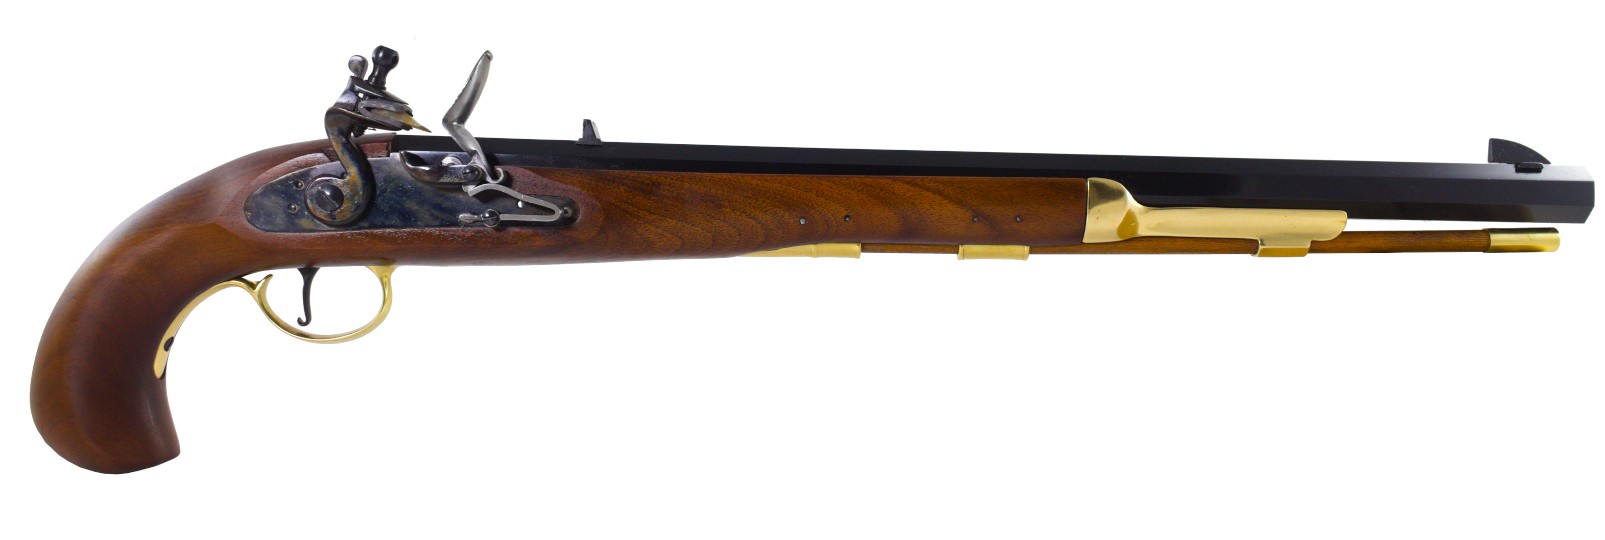 Bounty Pistol flintlock model